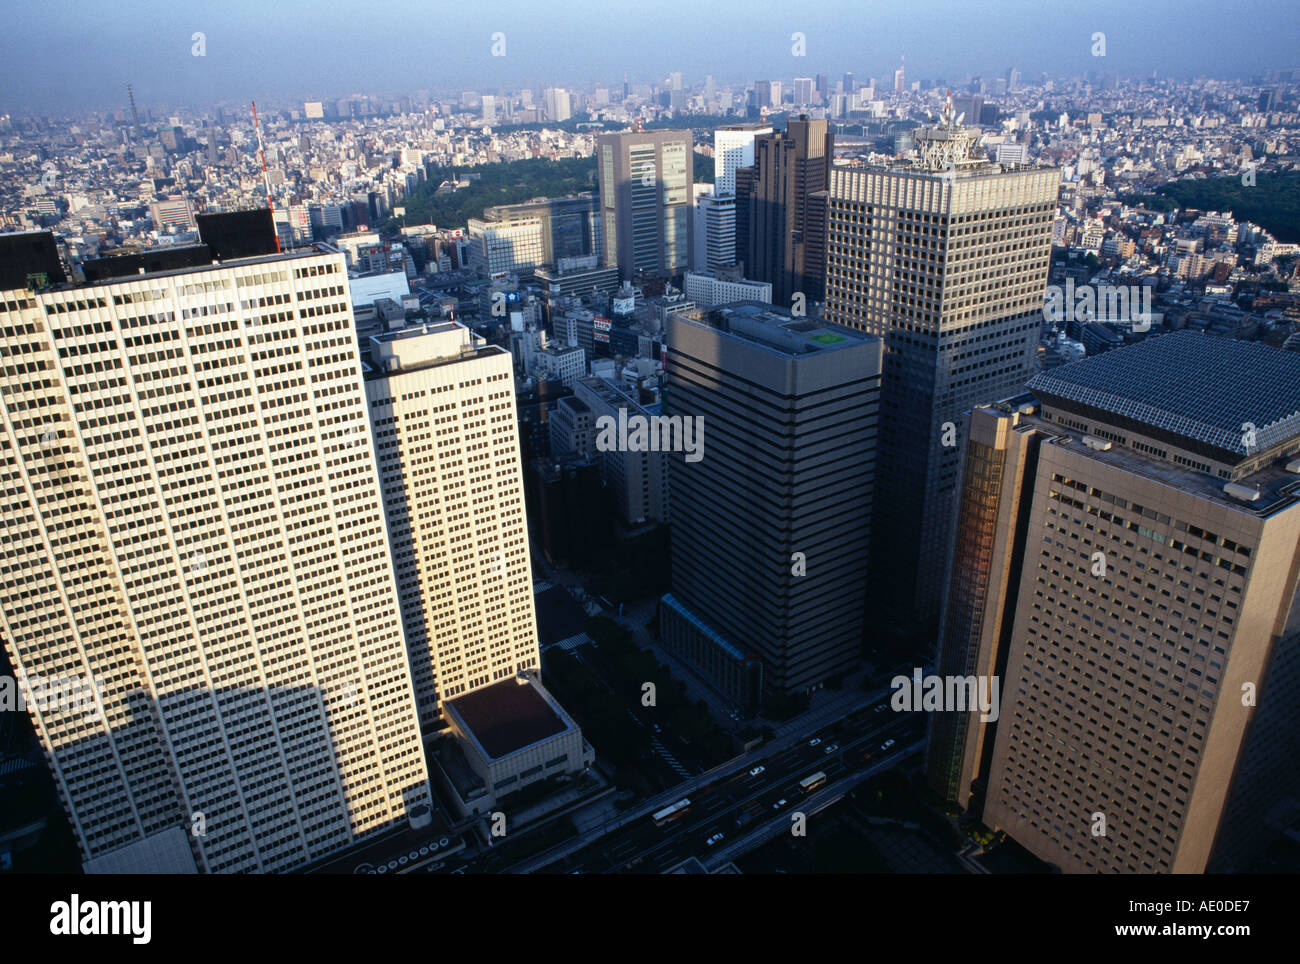 Vue du bâtiment de la région métropolitaine de Tokyo Japon Banque D'Images